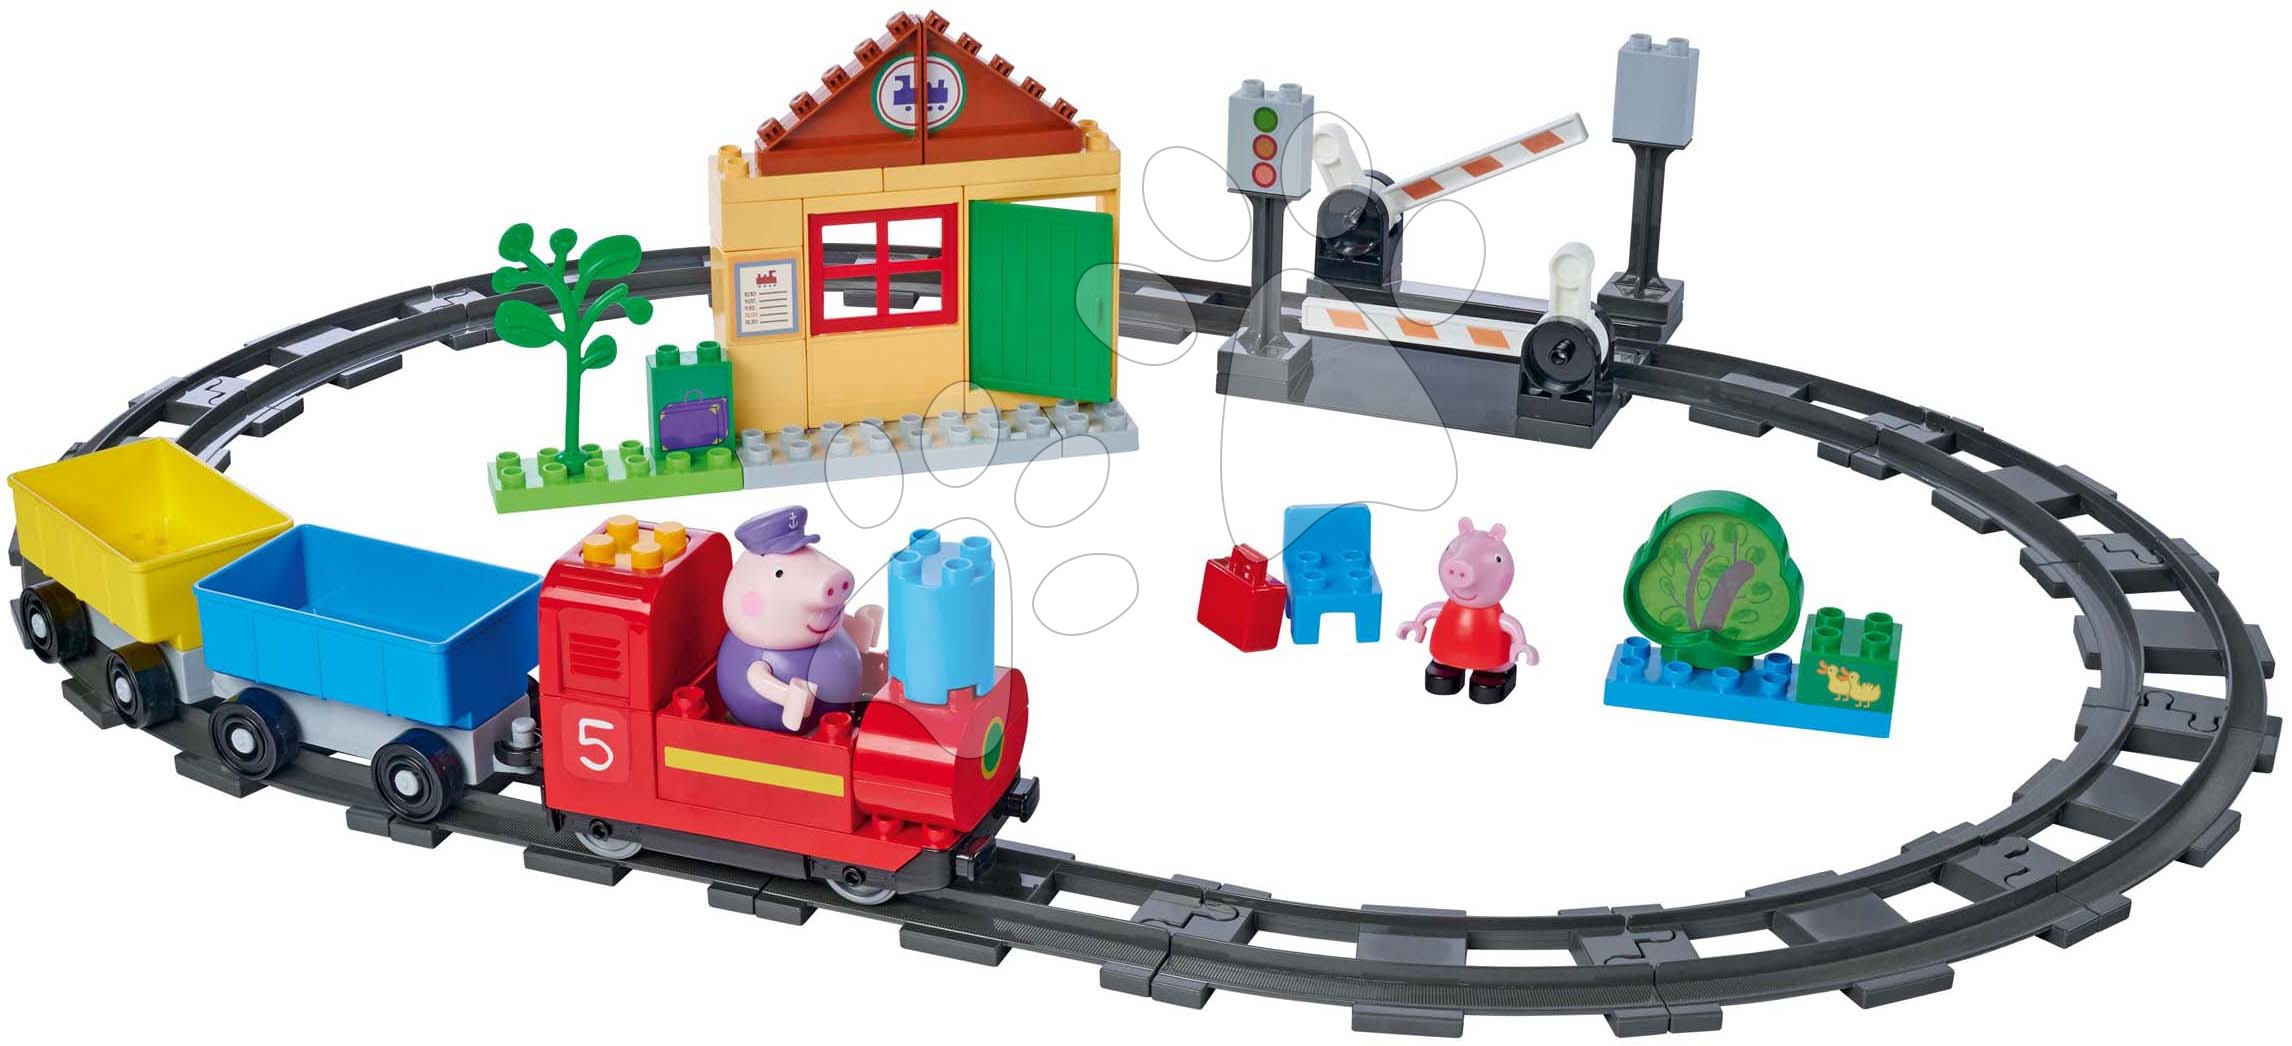 Stavebnice elektronická Peppa Pig Train Fun PlayBig Bloxx BIG železnice se zvukem a 2 figurkami 55 dílů od 1,5-5 let